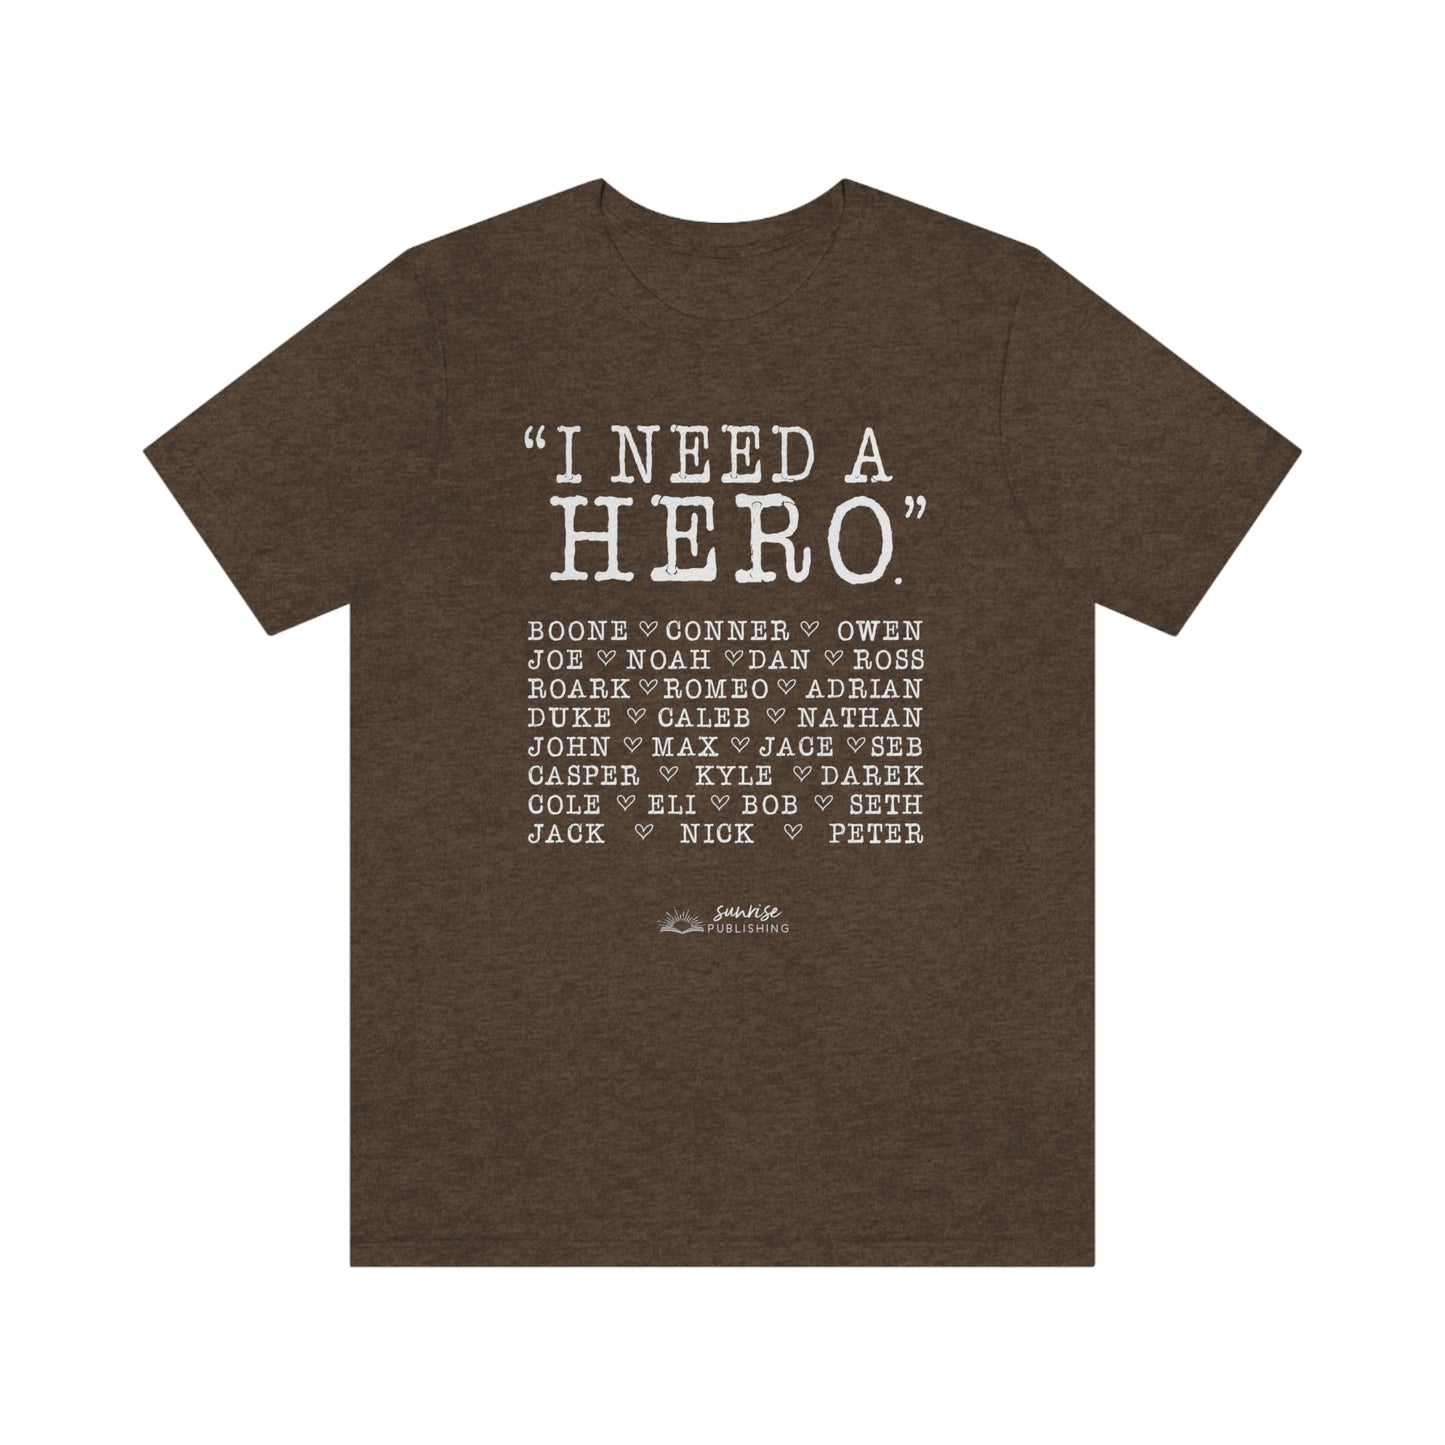 Deep Haven - "I need a hero." - Short  Sleeve Tee